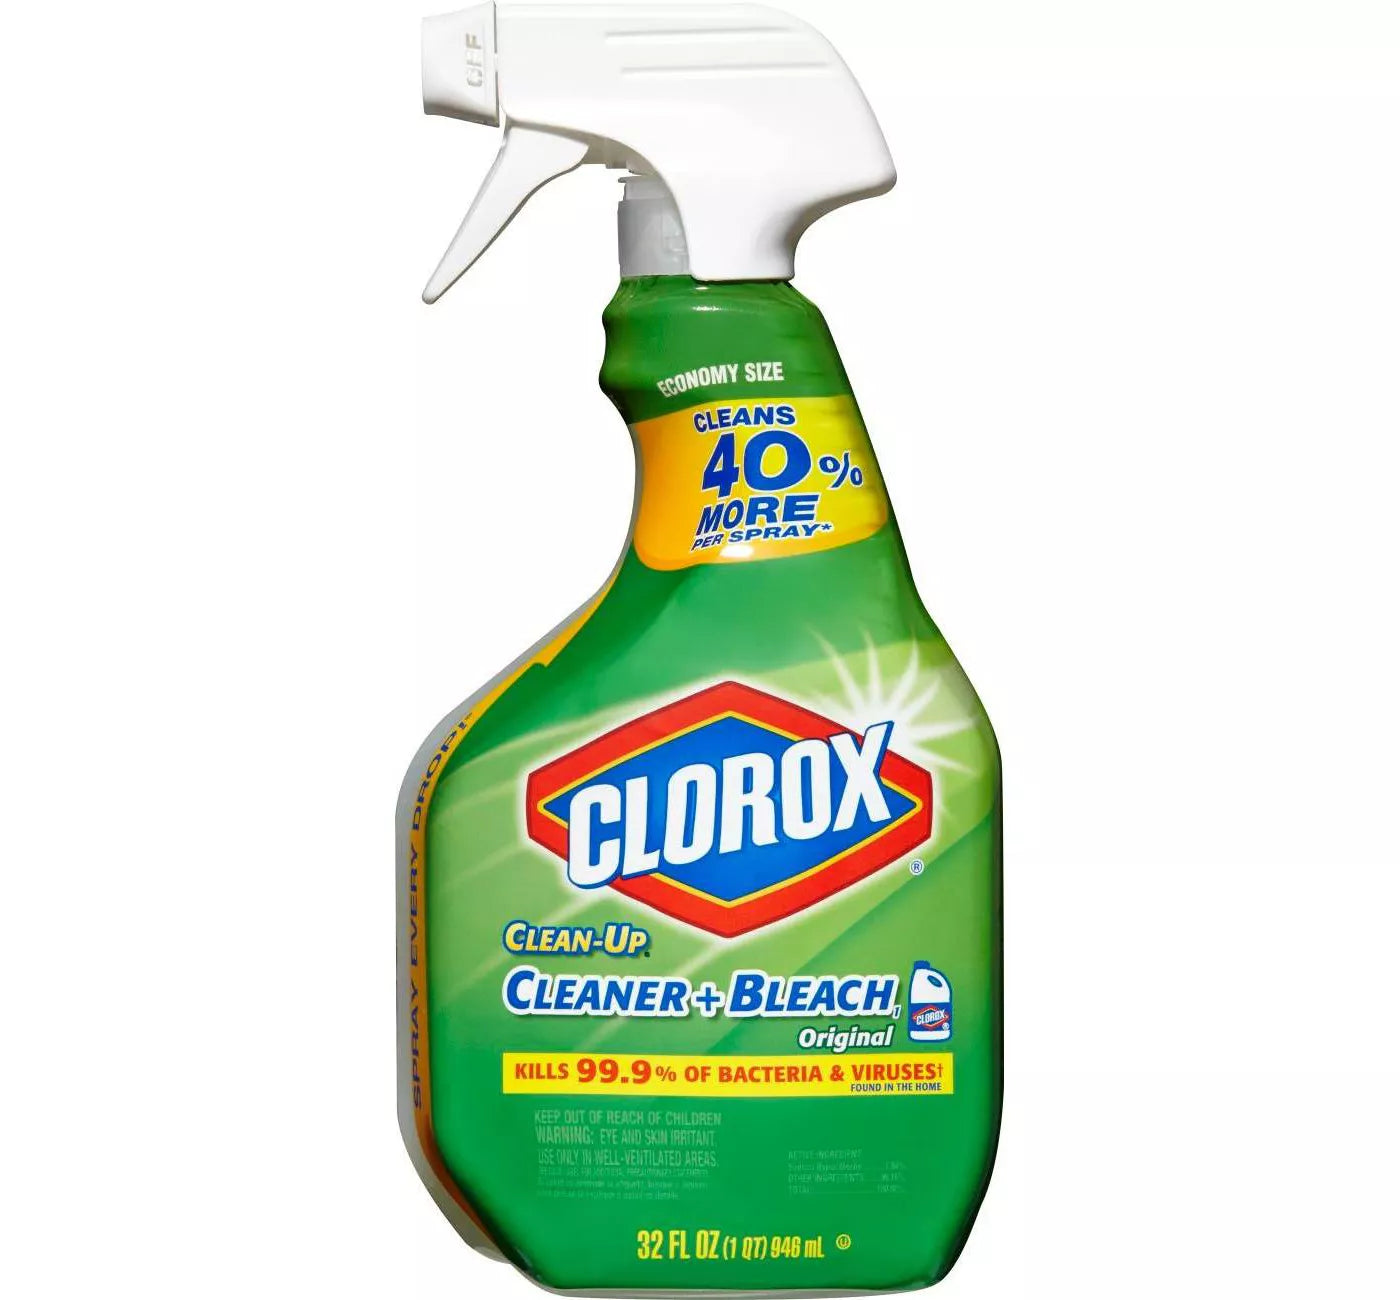 Clorox Clean-Up Cleaner + Bleach Spray Original - 32oz/9pk